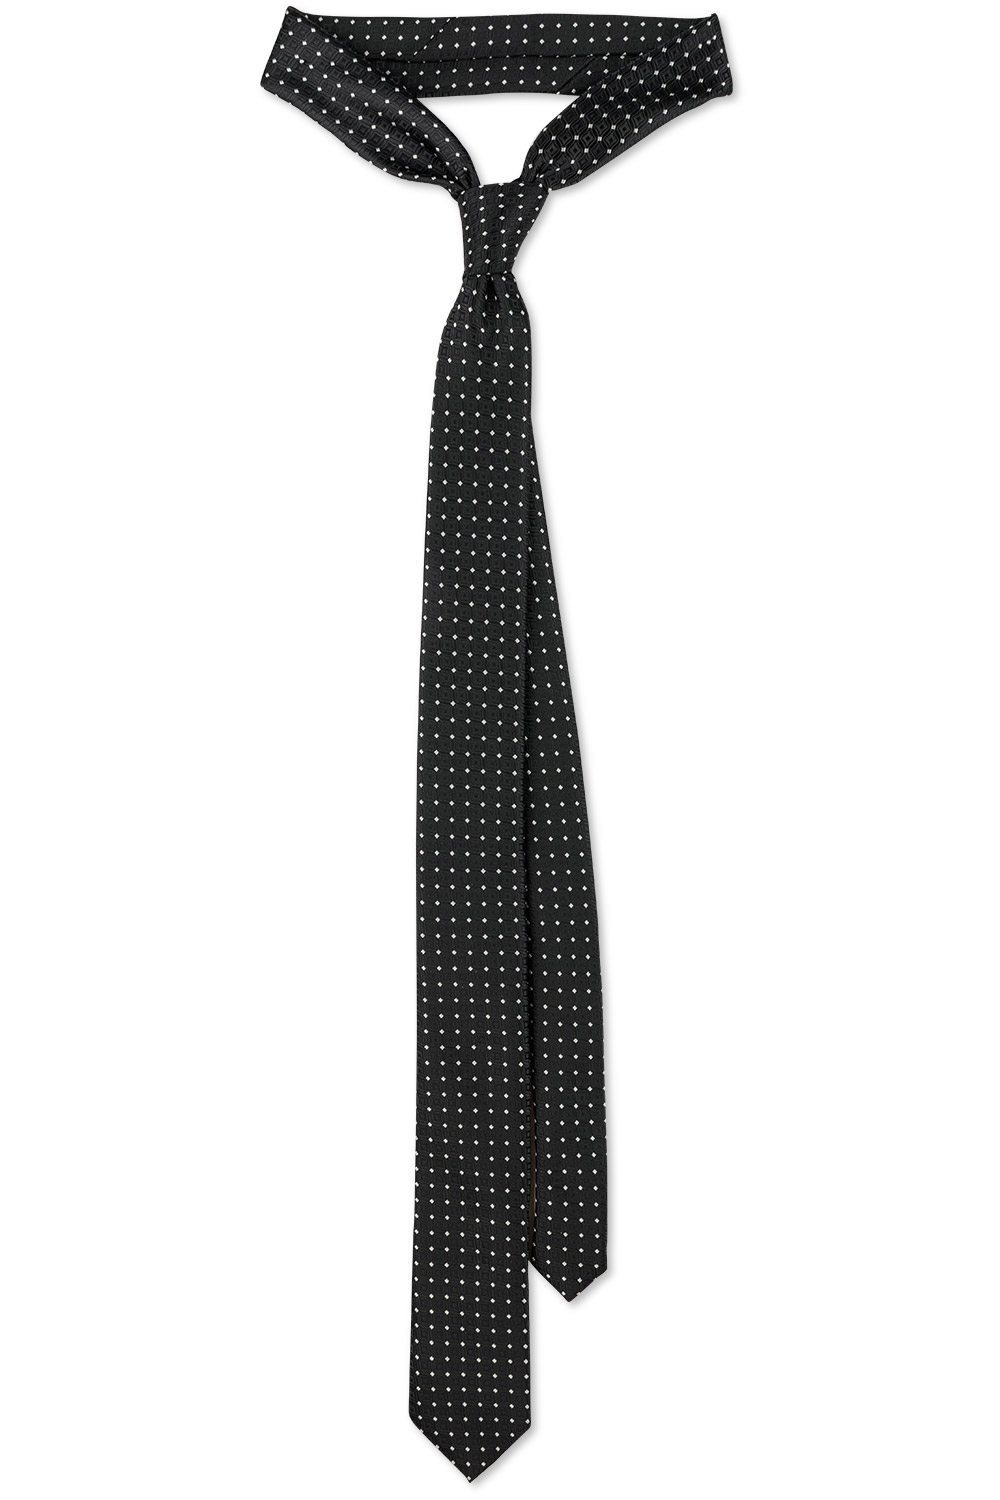 Cravata poliester neagra cu puncte 0